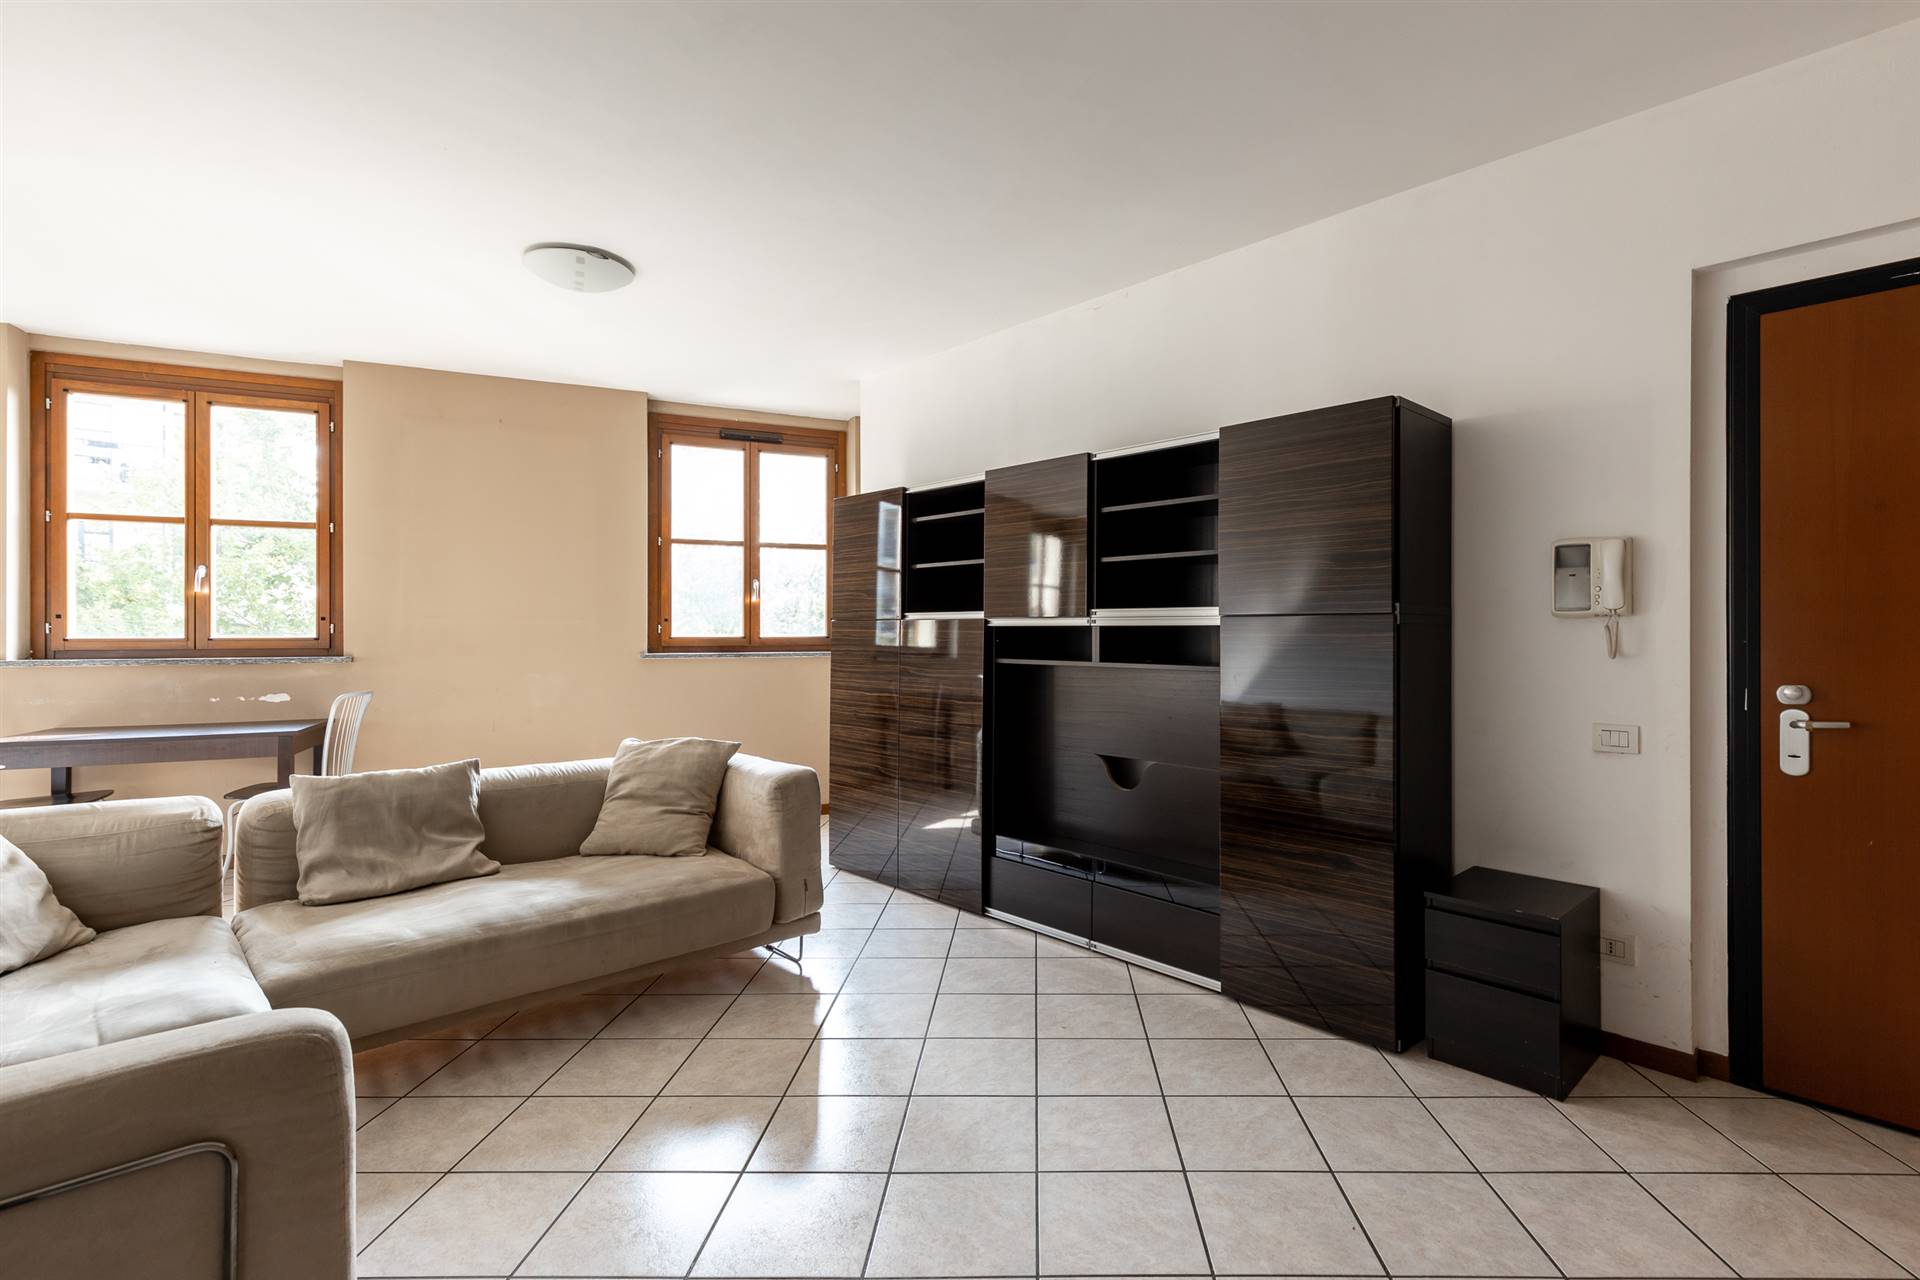 Appartamento in vendita a Pero, 2 locali, zona Zona: Cerchiate, prezzo € 198.000 | CambioCasa.it